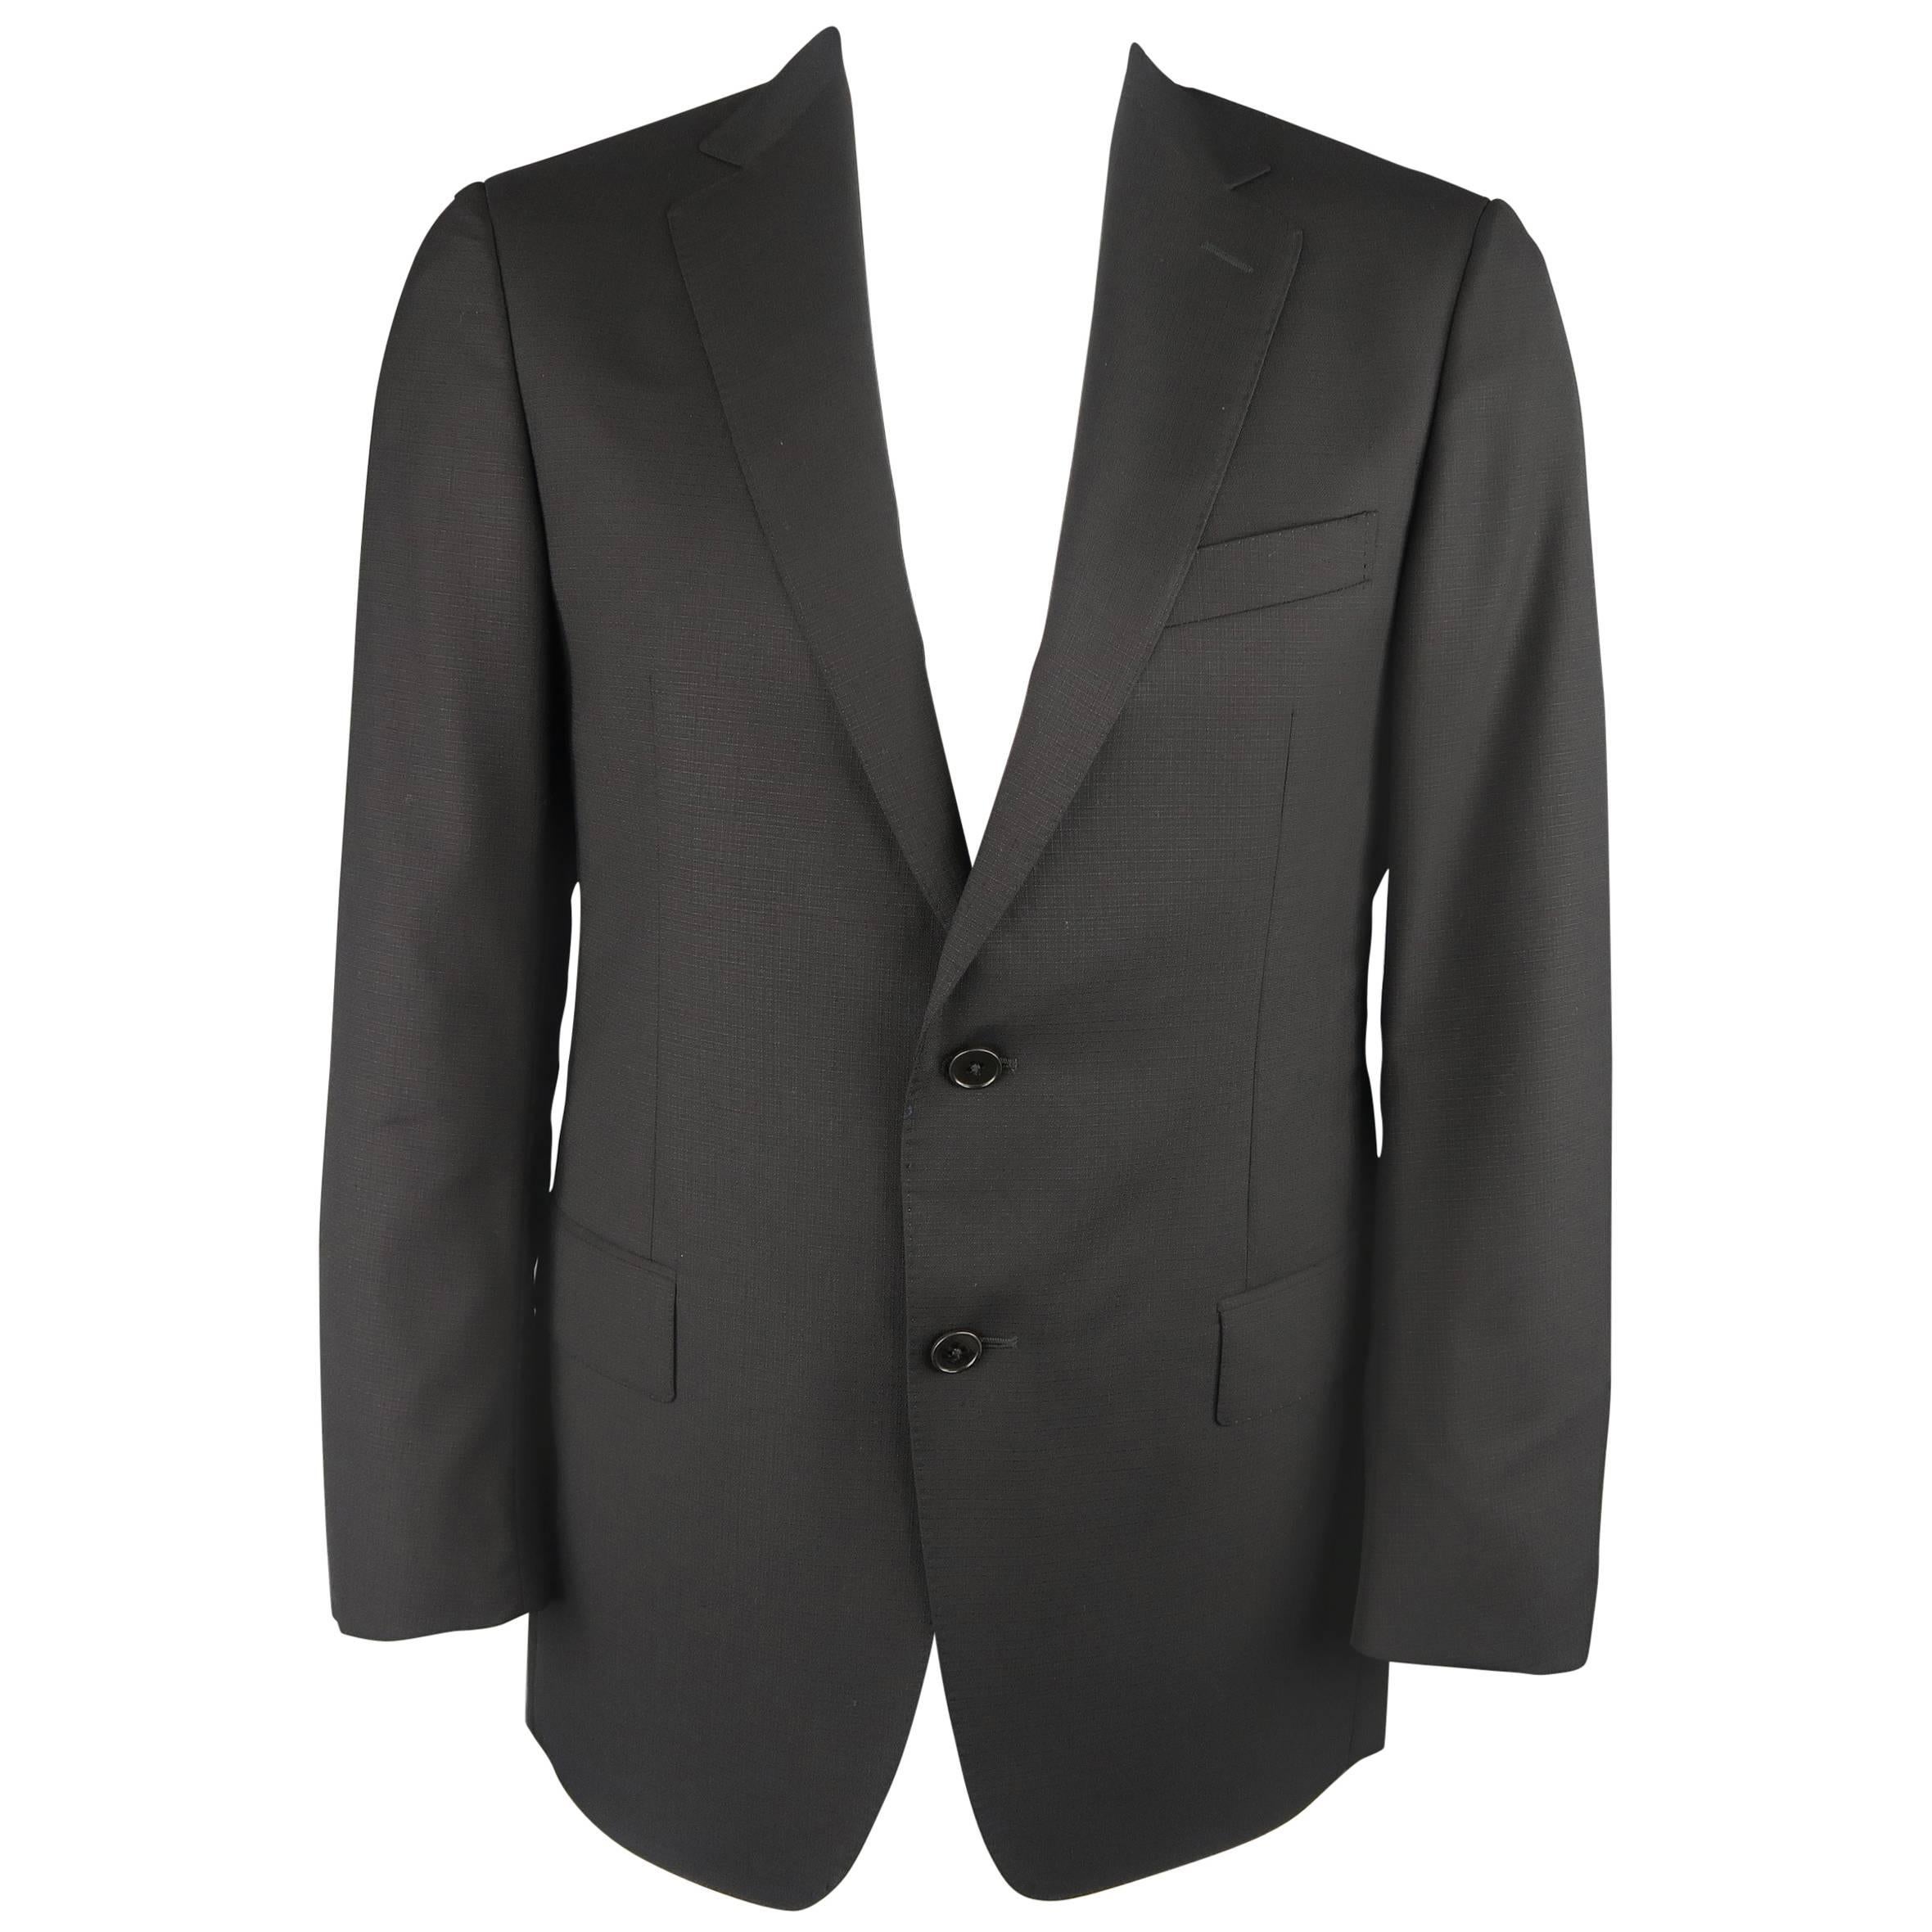 ERMENEGILDO ZEGNA 40 Regular Black Window Pane Textured Wool Sport Coat Jacket